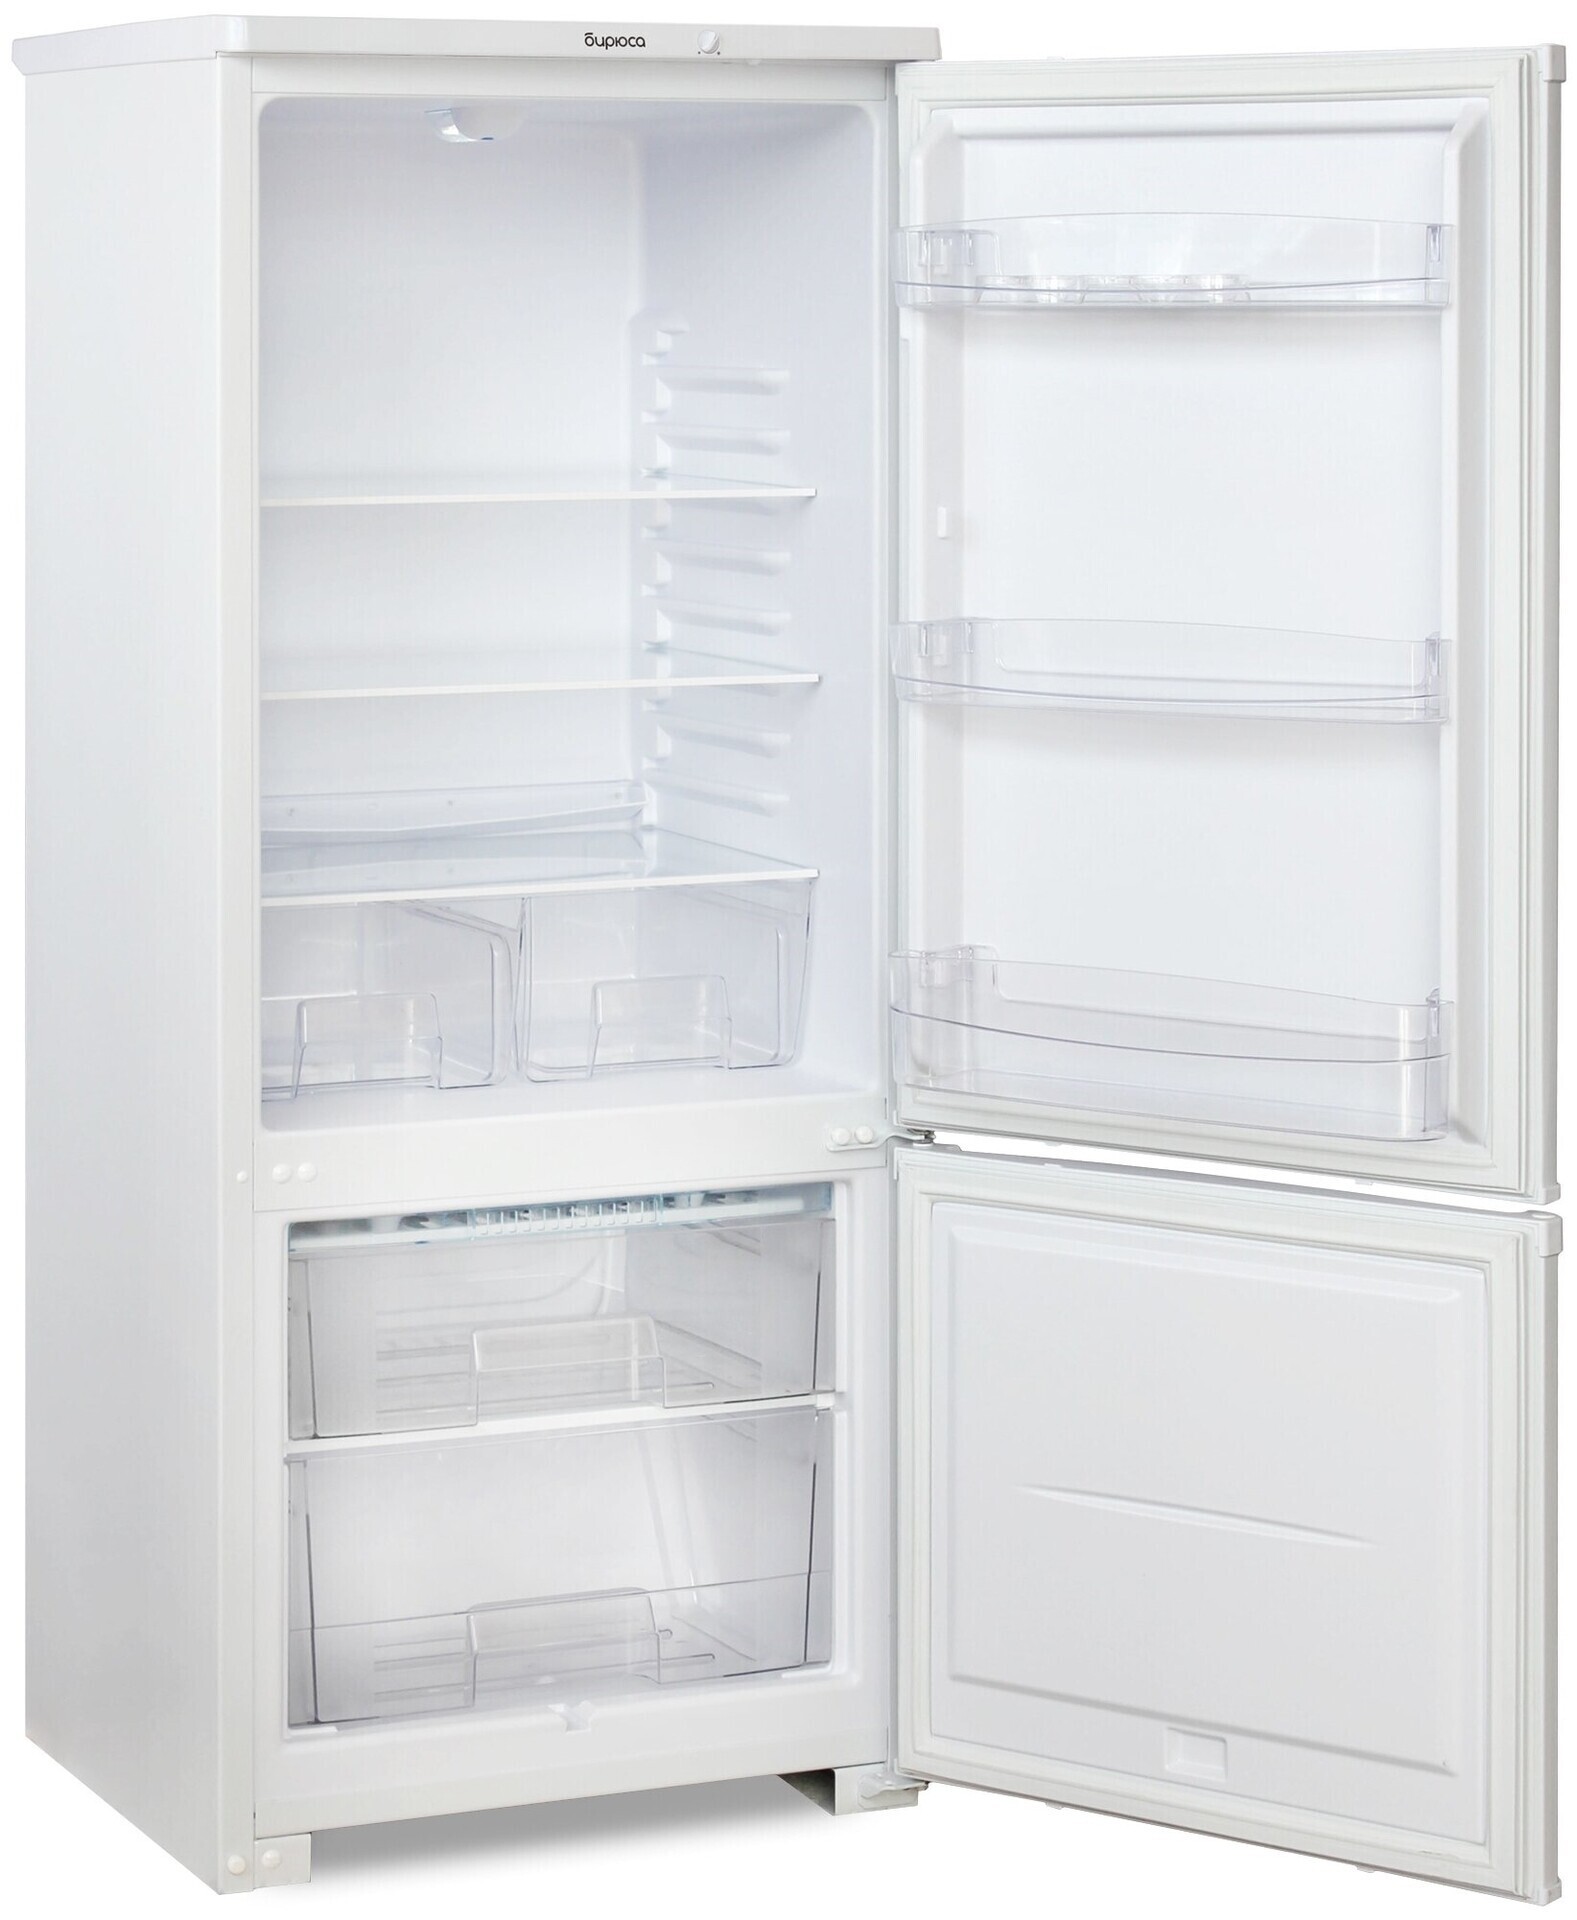 холодильники индезит цены фото